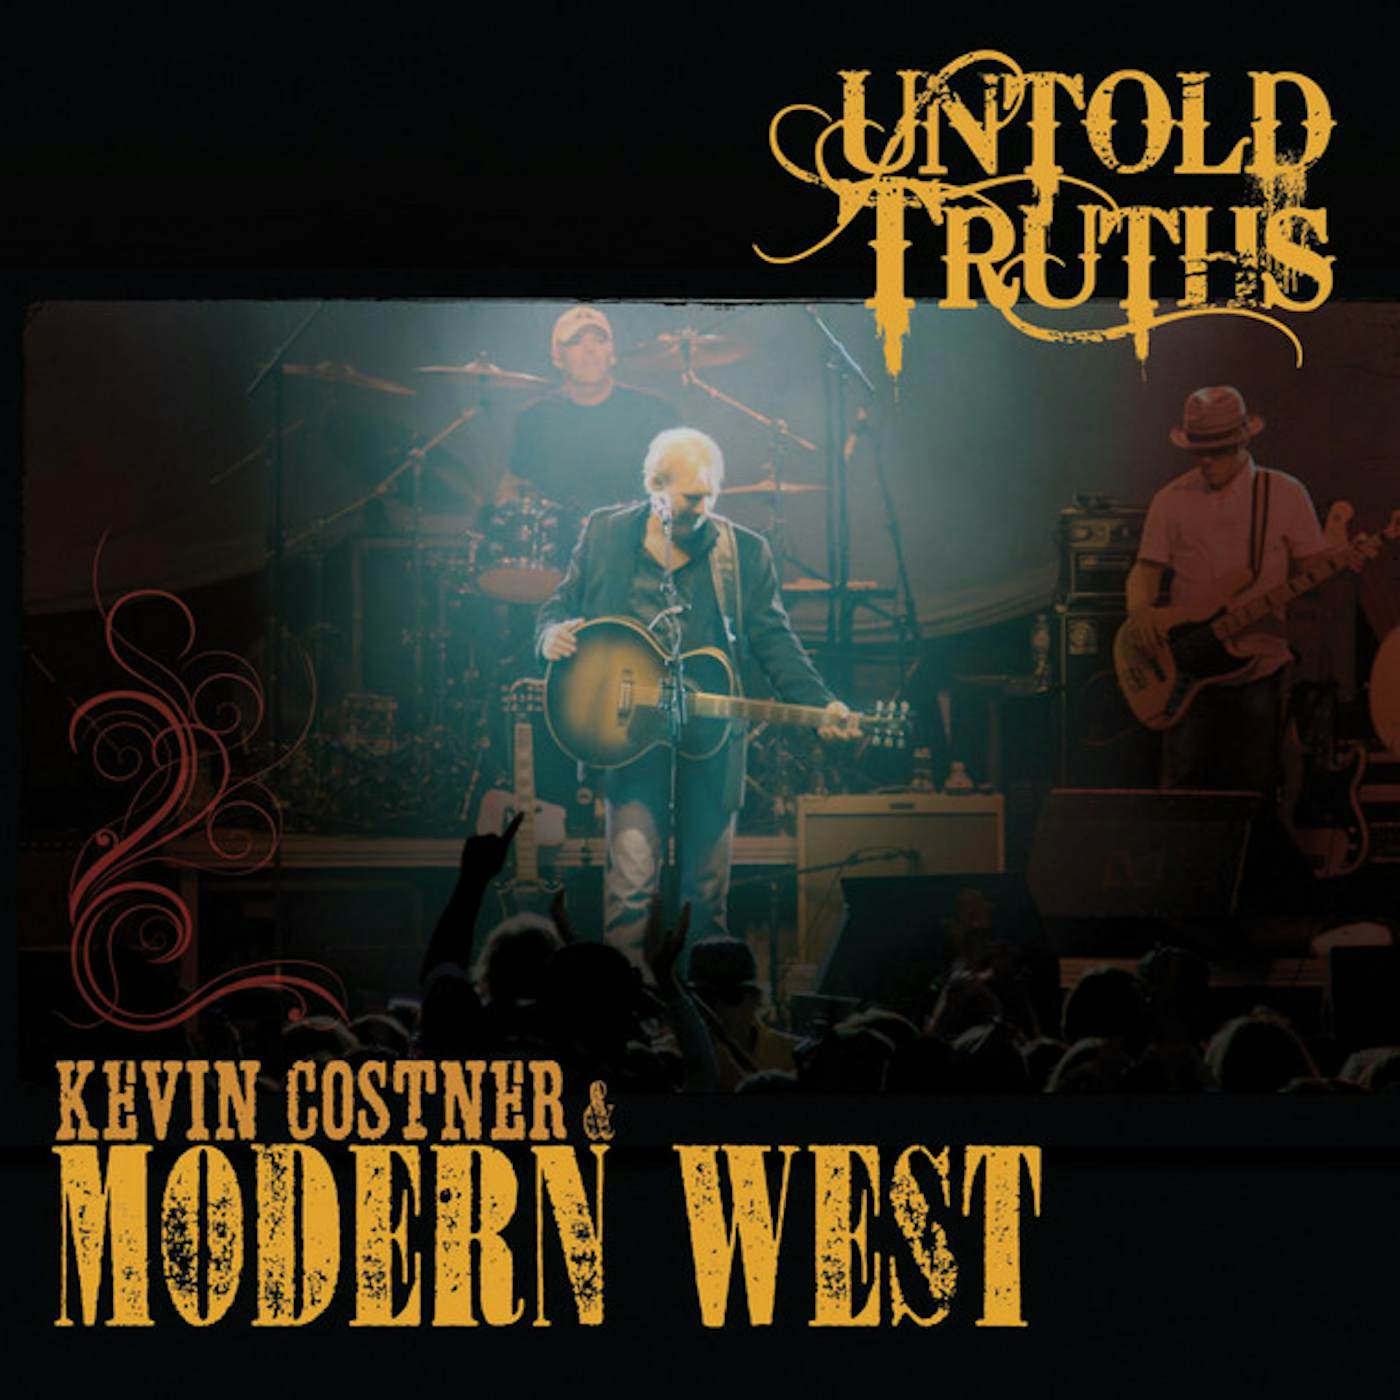 Kevin Costner & Modern West UNTOLD TRUTHS CD